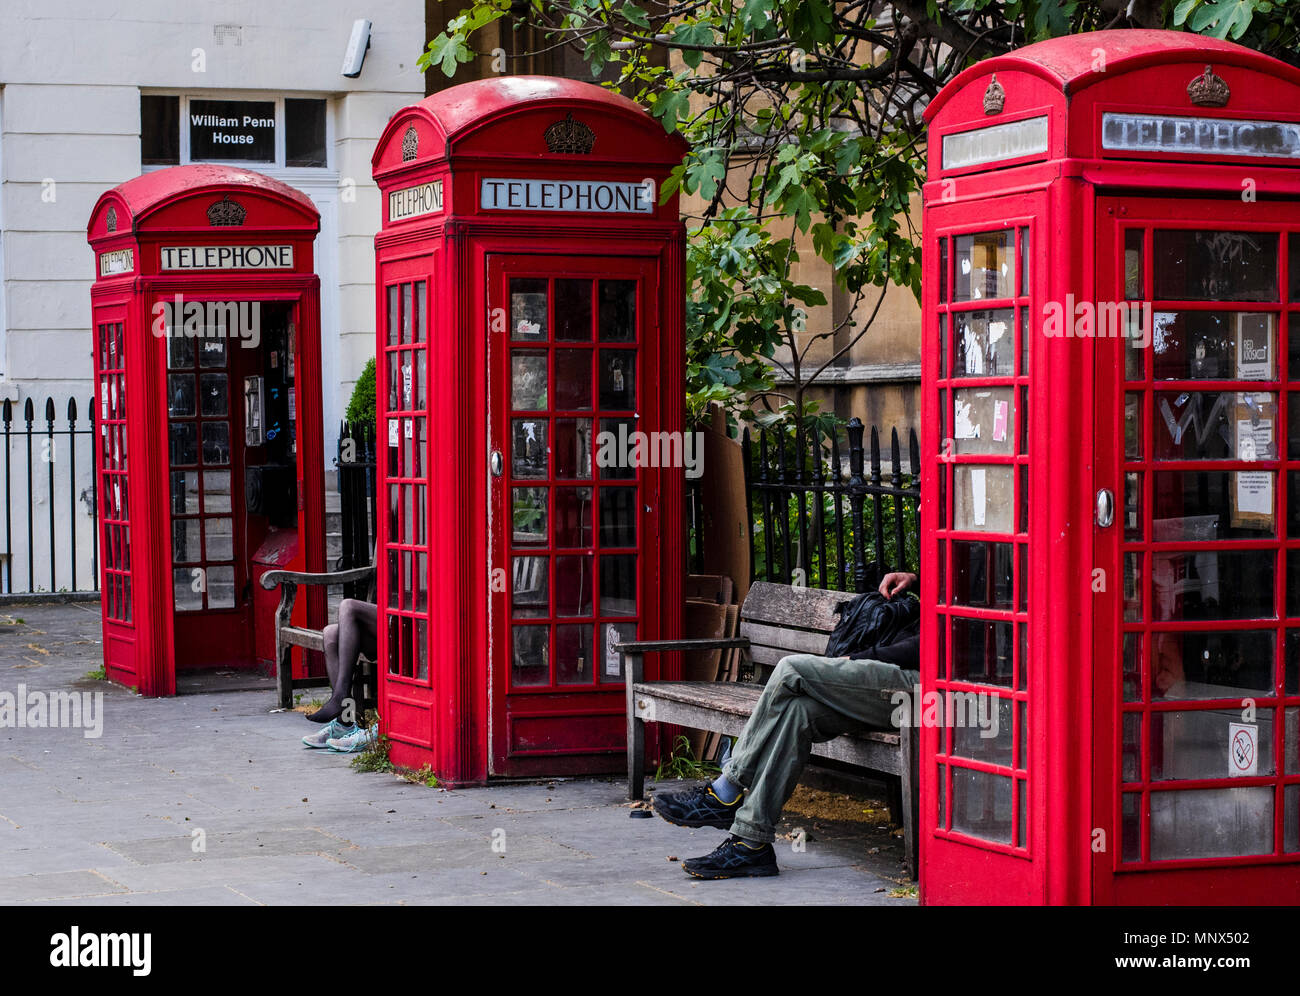 Mann und Frau, sitzen auf den Bänken zwischen roten Telefonzellen, London, England, Großbritannien Stockfoto